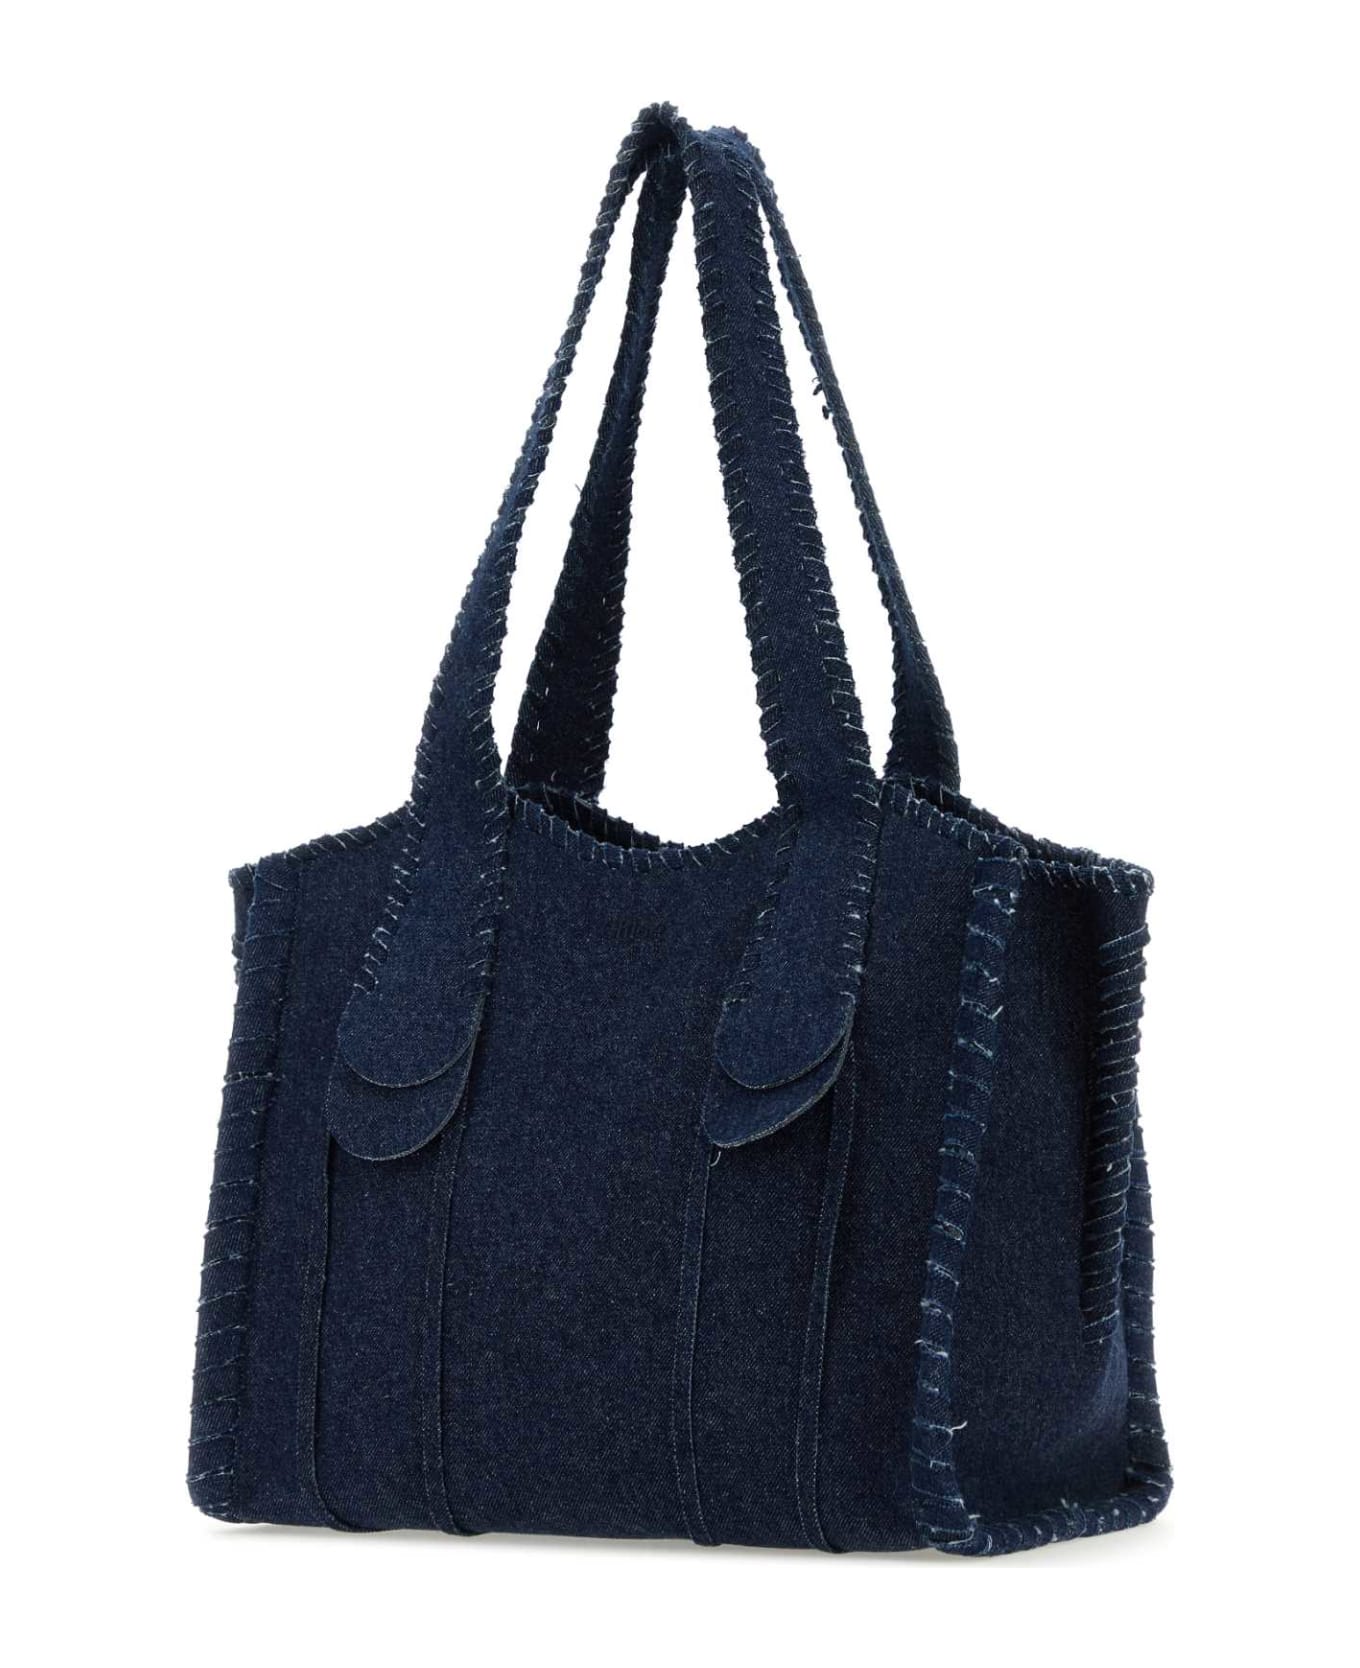 Chloé Dark Blue Denim Medium Mony Shopping Bag - DENIM